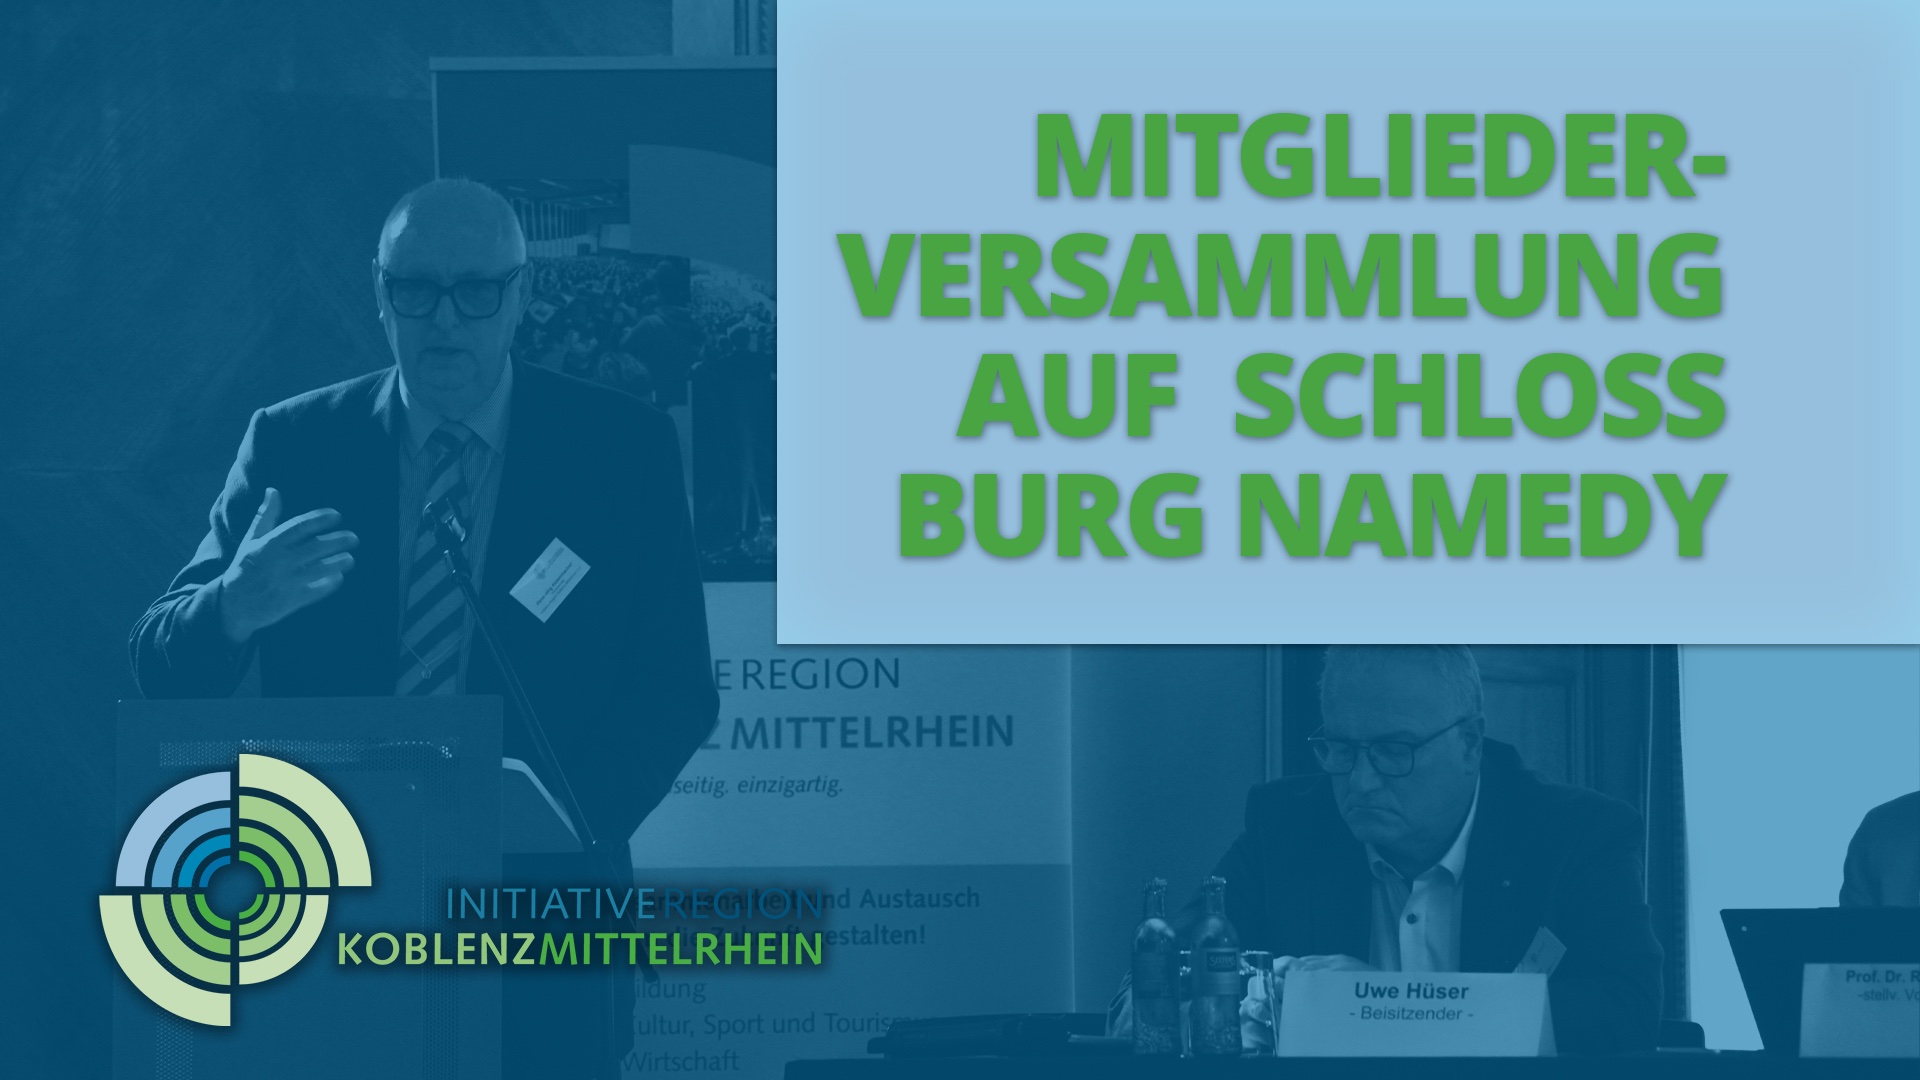 Initiative Region Koblenz-Mittelrhein, der Talk (Teil 1)